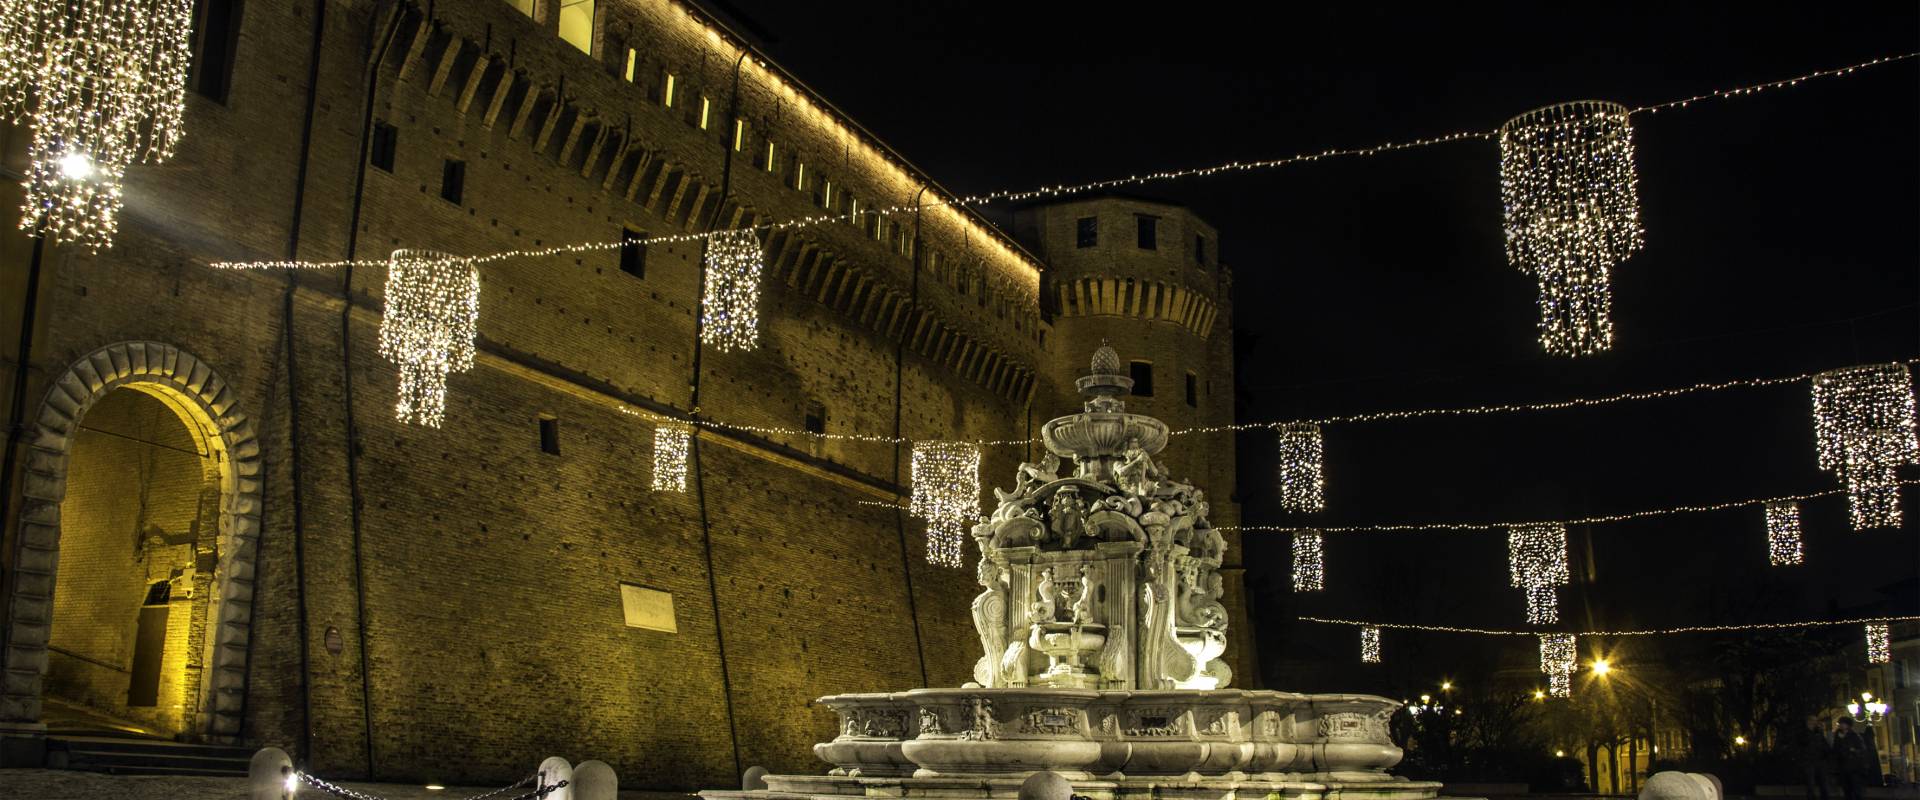 Piazza del Popolo - periodo natalizio 6 photo by Pierpaoloturchi